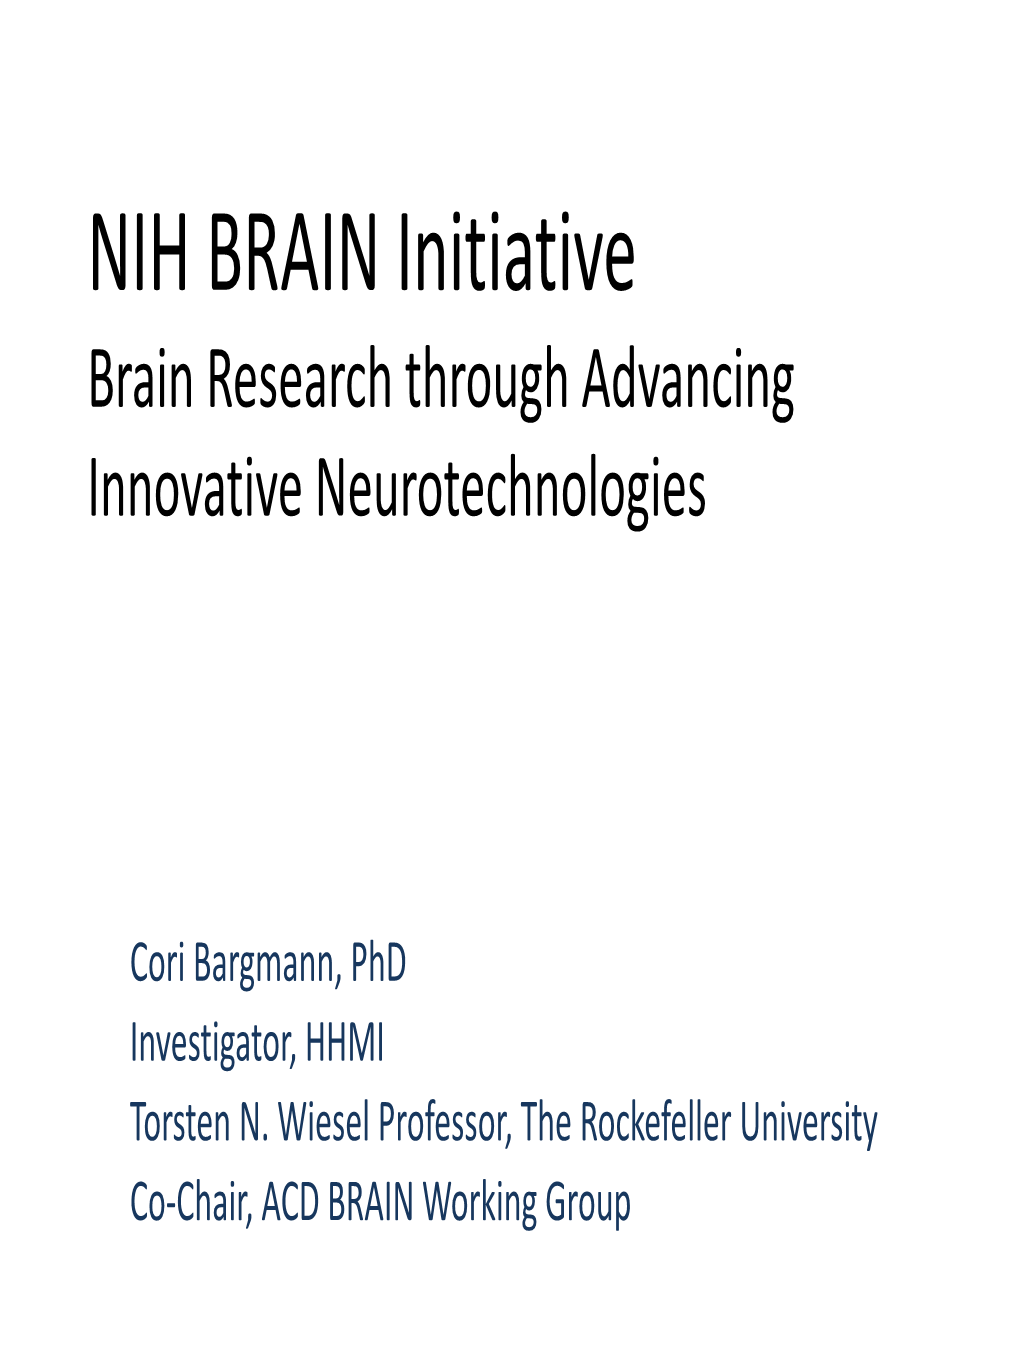 NIH BRAIN Initiative: Brain Research Through Advancing Innovative